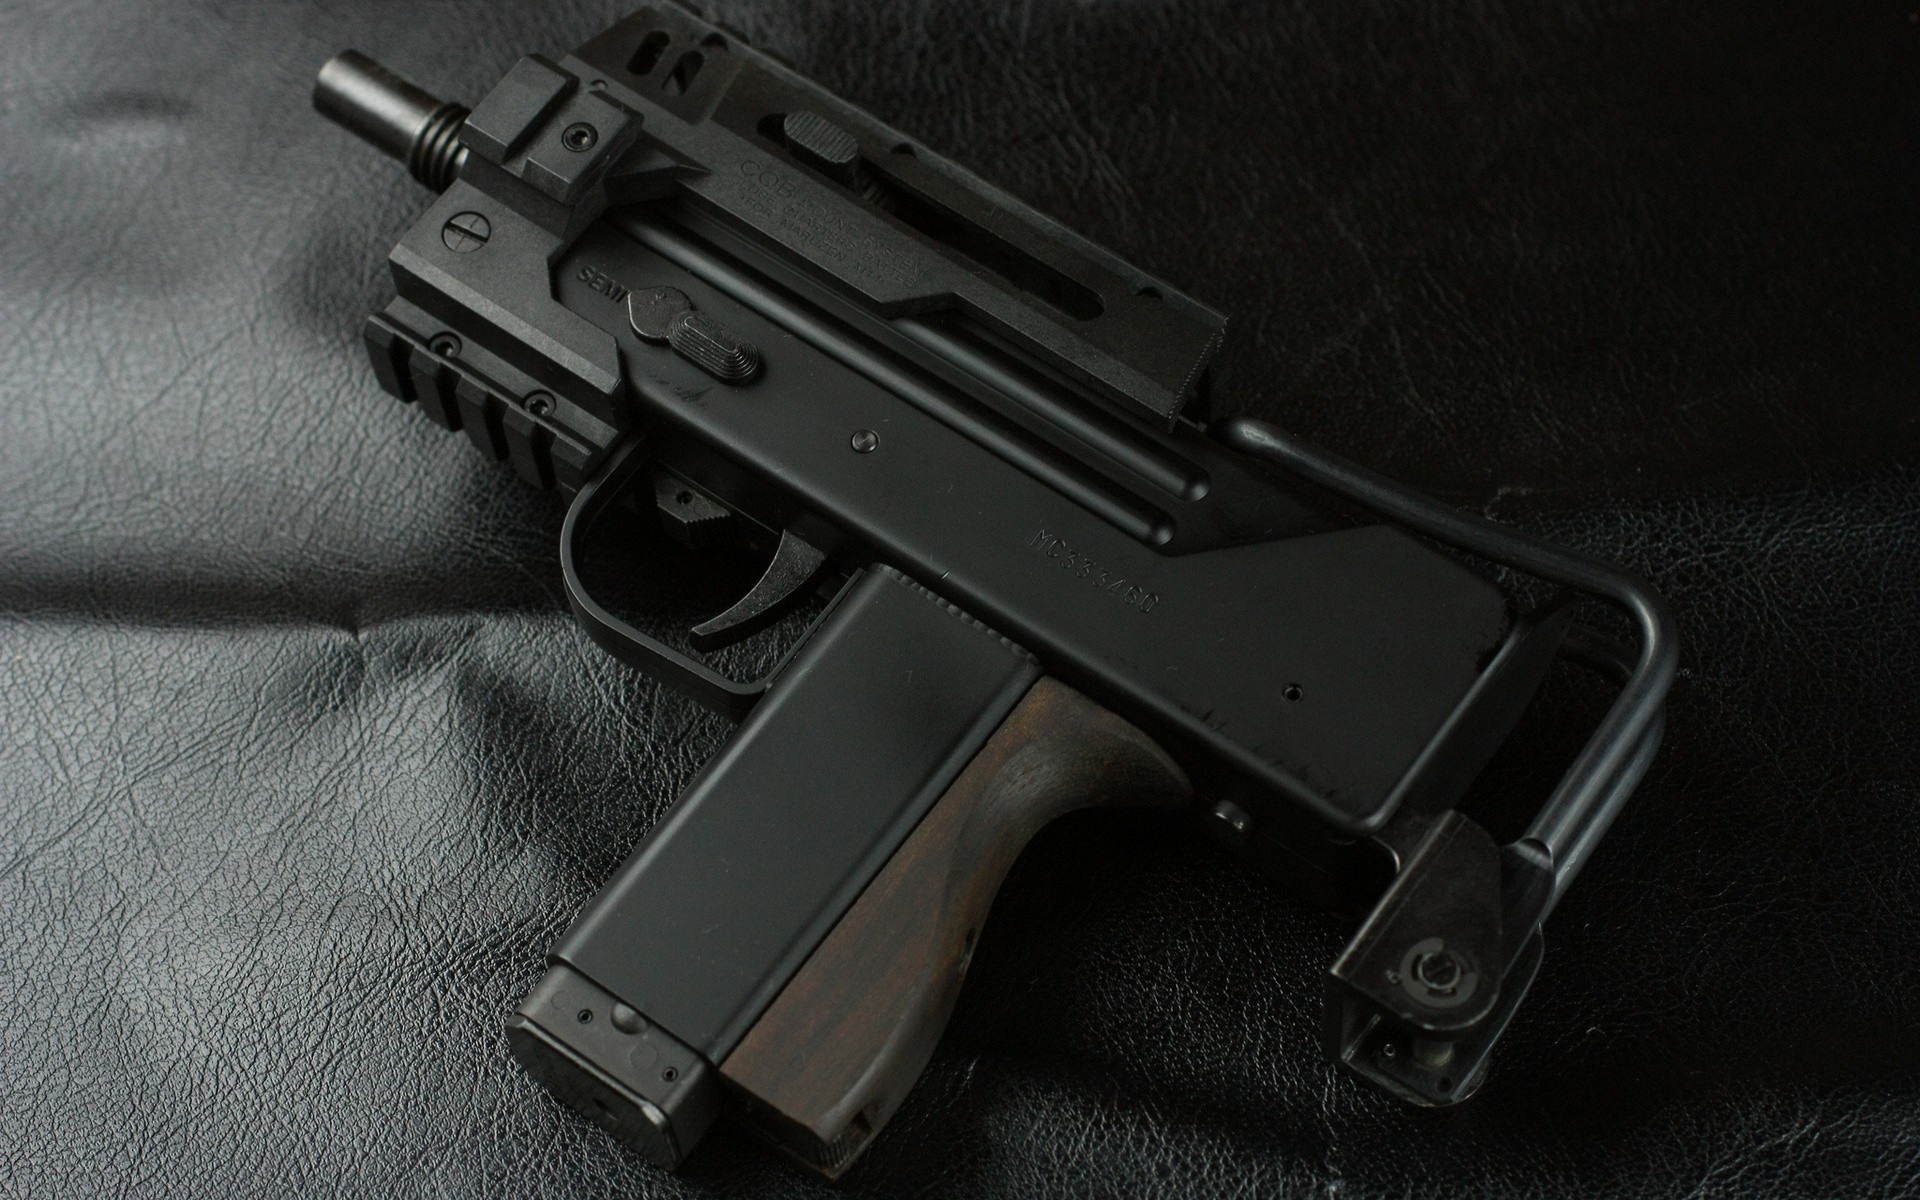 General 1920x1200 weapon gun black background MAC-10 submachine gun American firearms